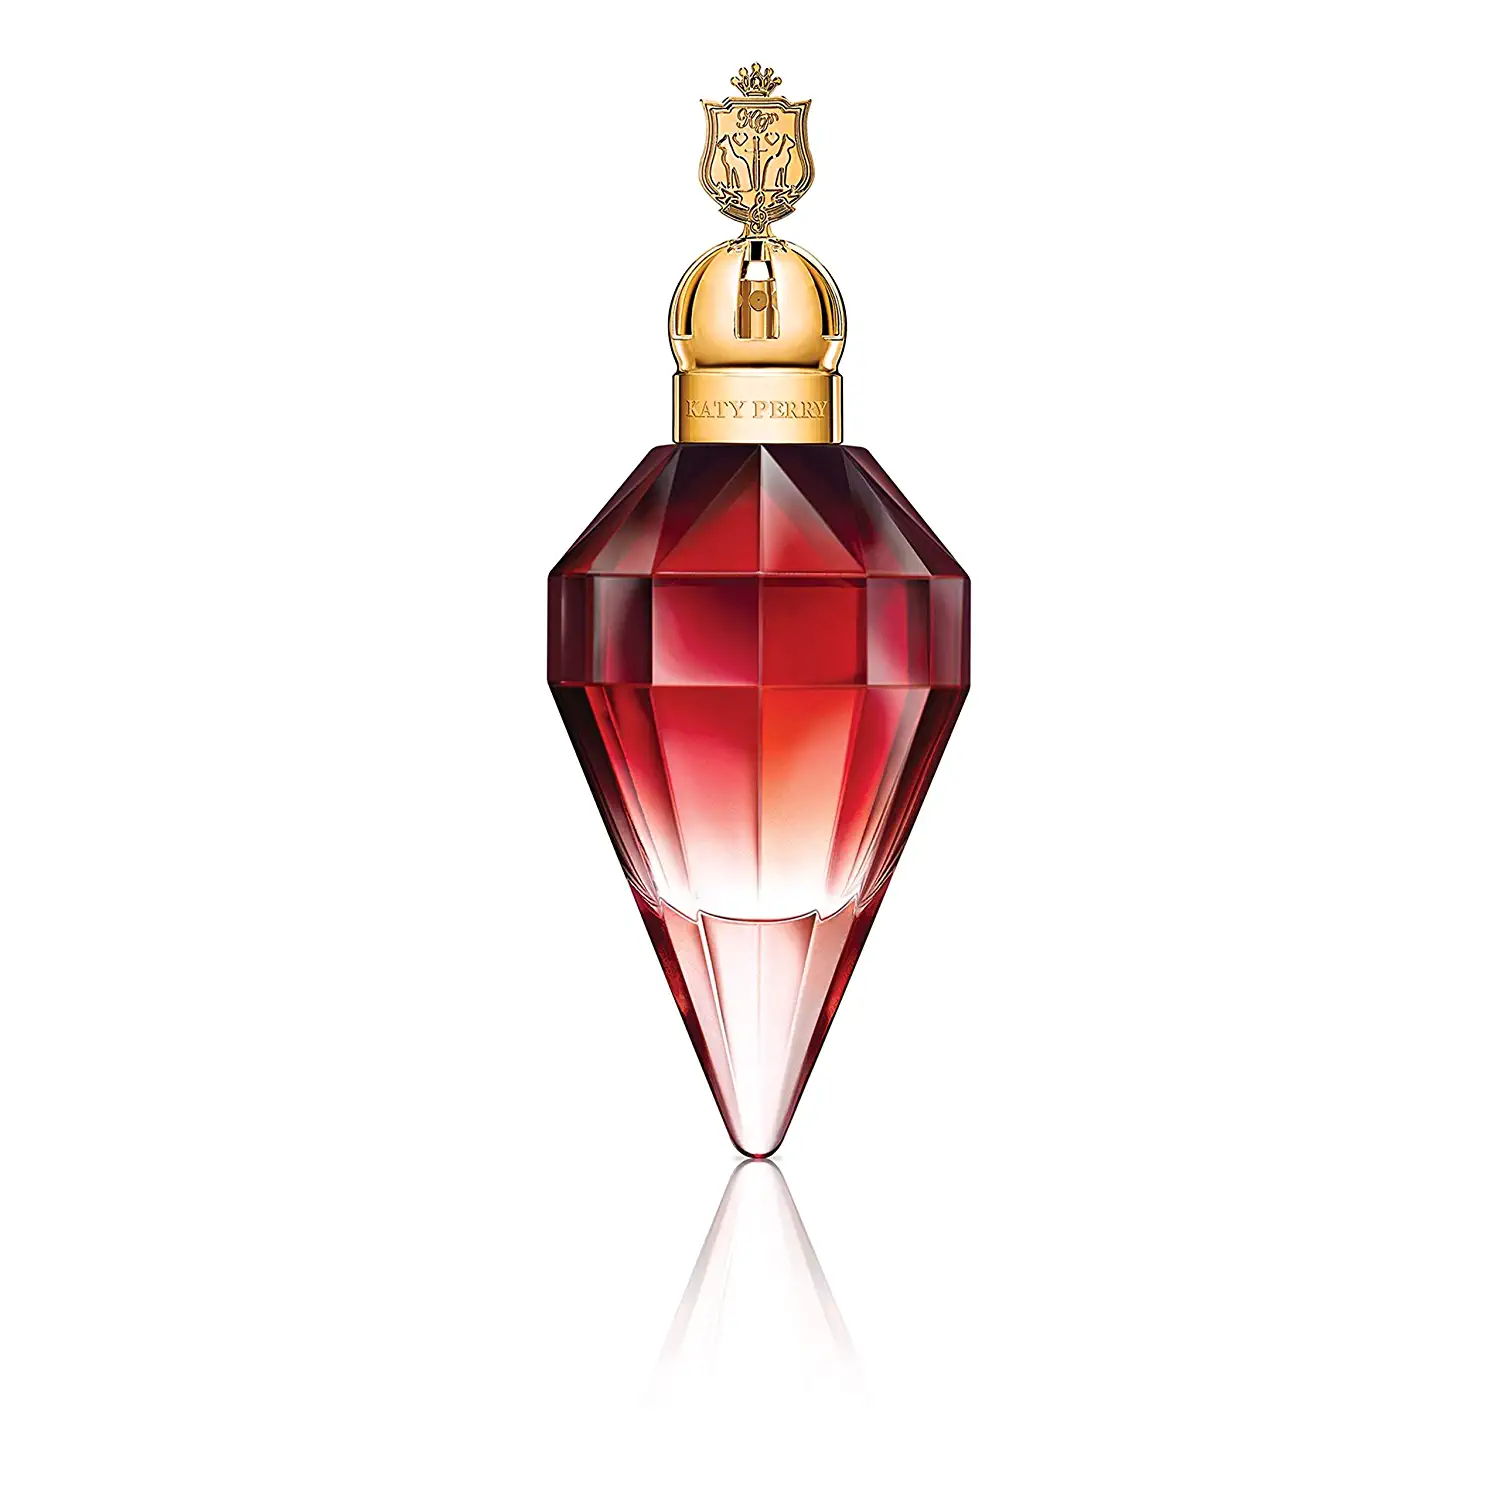 Katy Perry Killer Queen Berries & Plum Celebrity Perfume